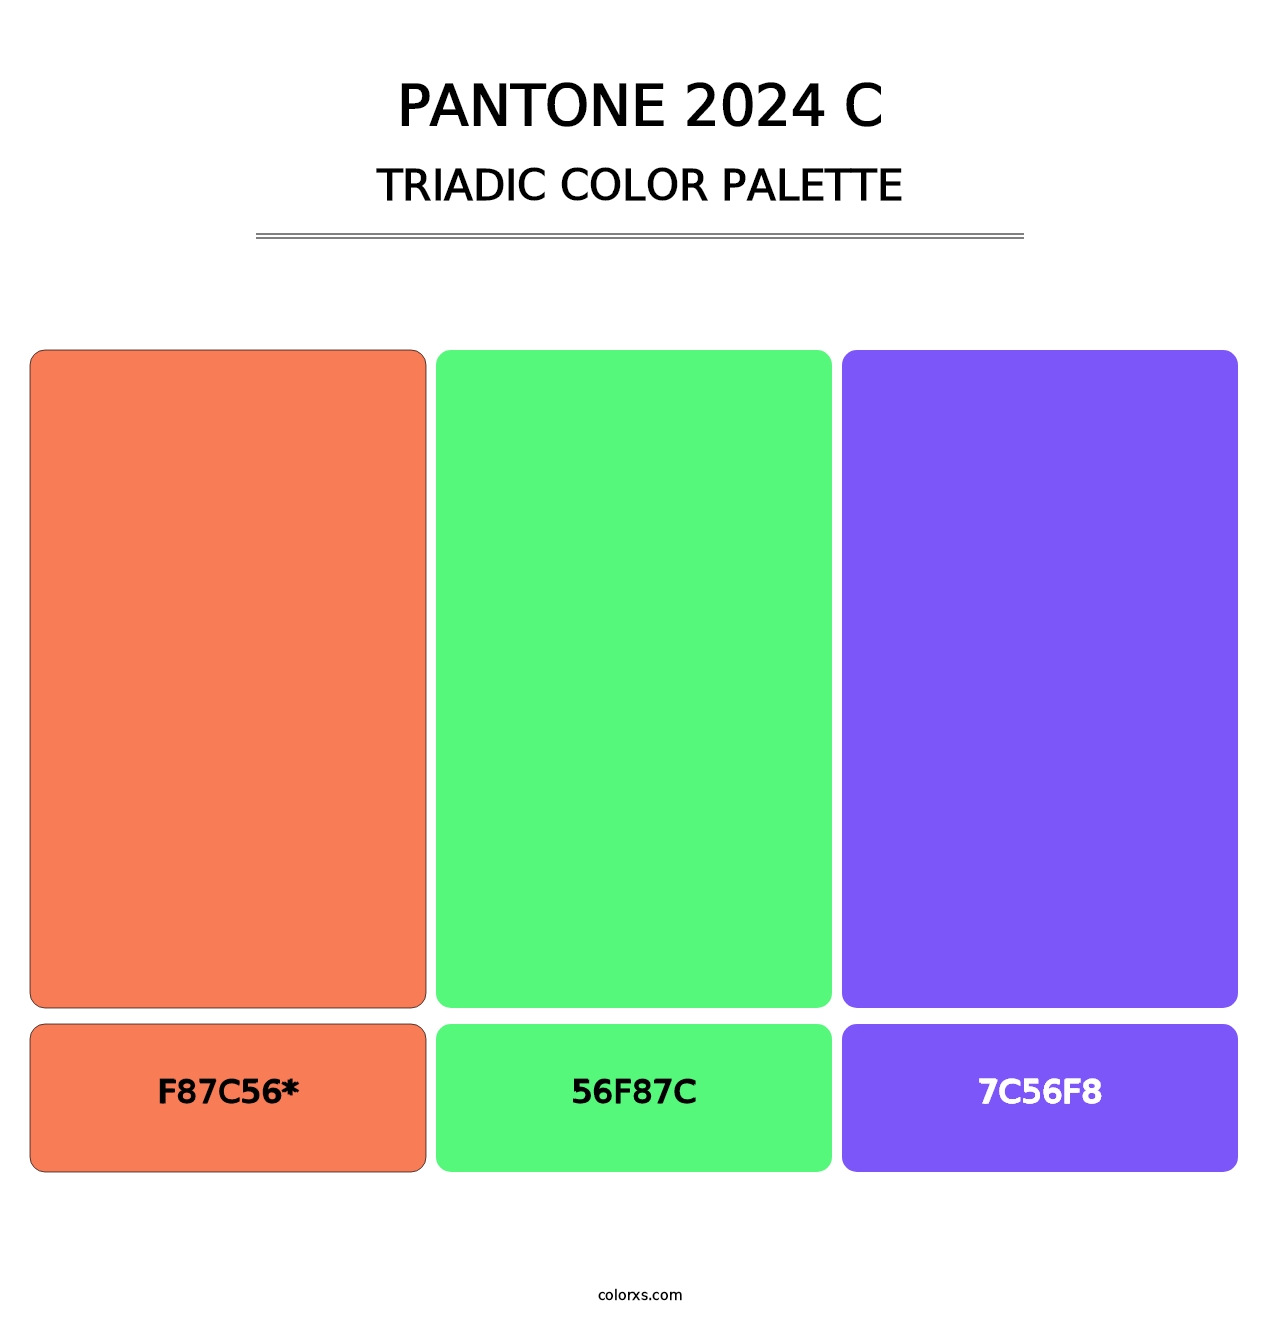 PANTONE 2024 C - Triadic Color Palette